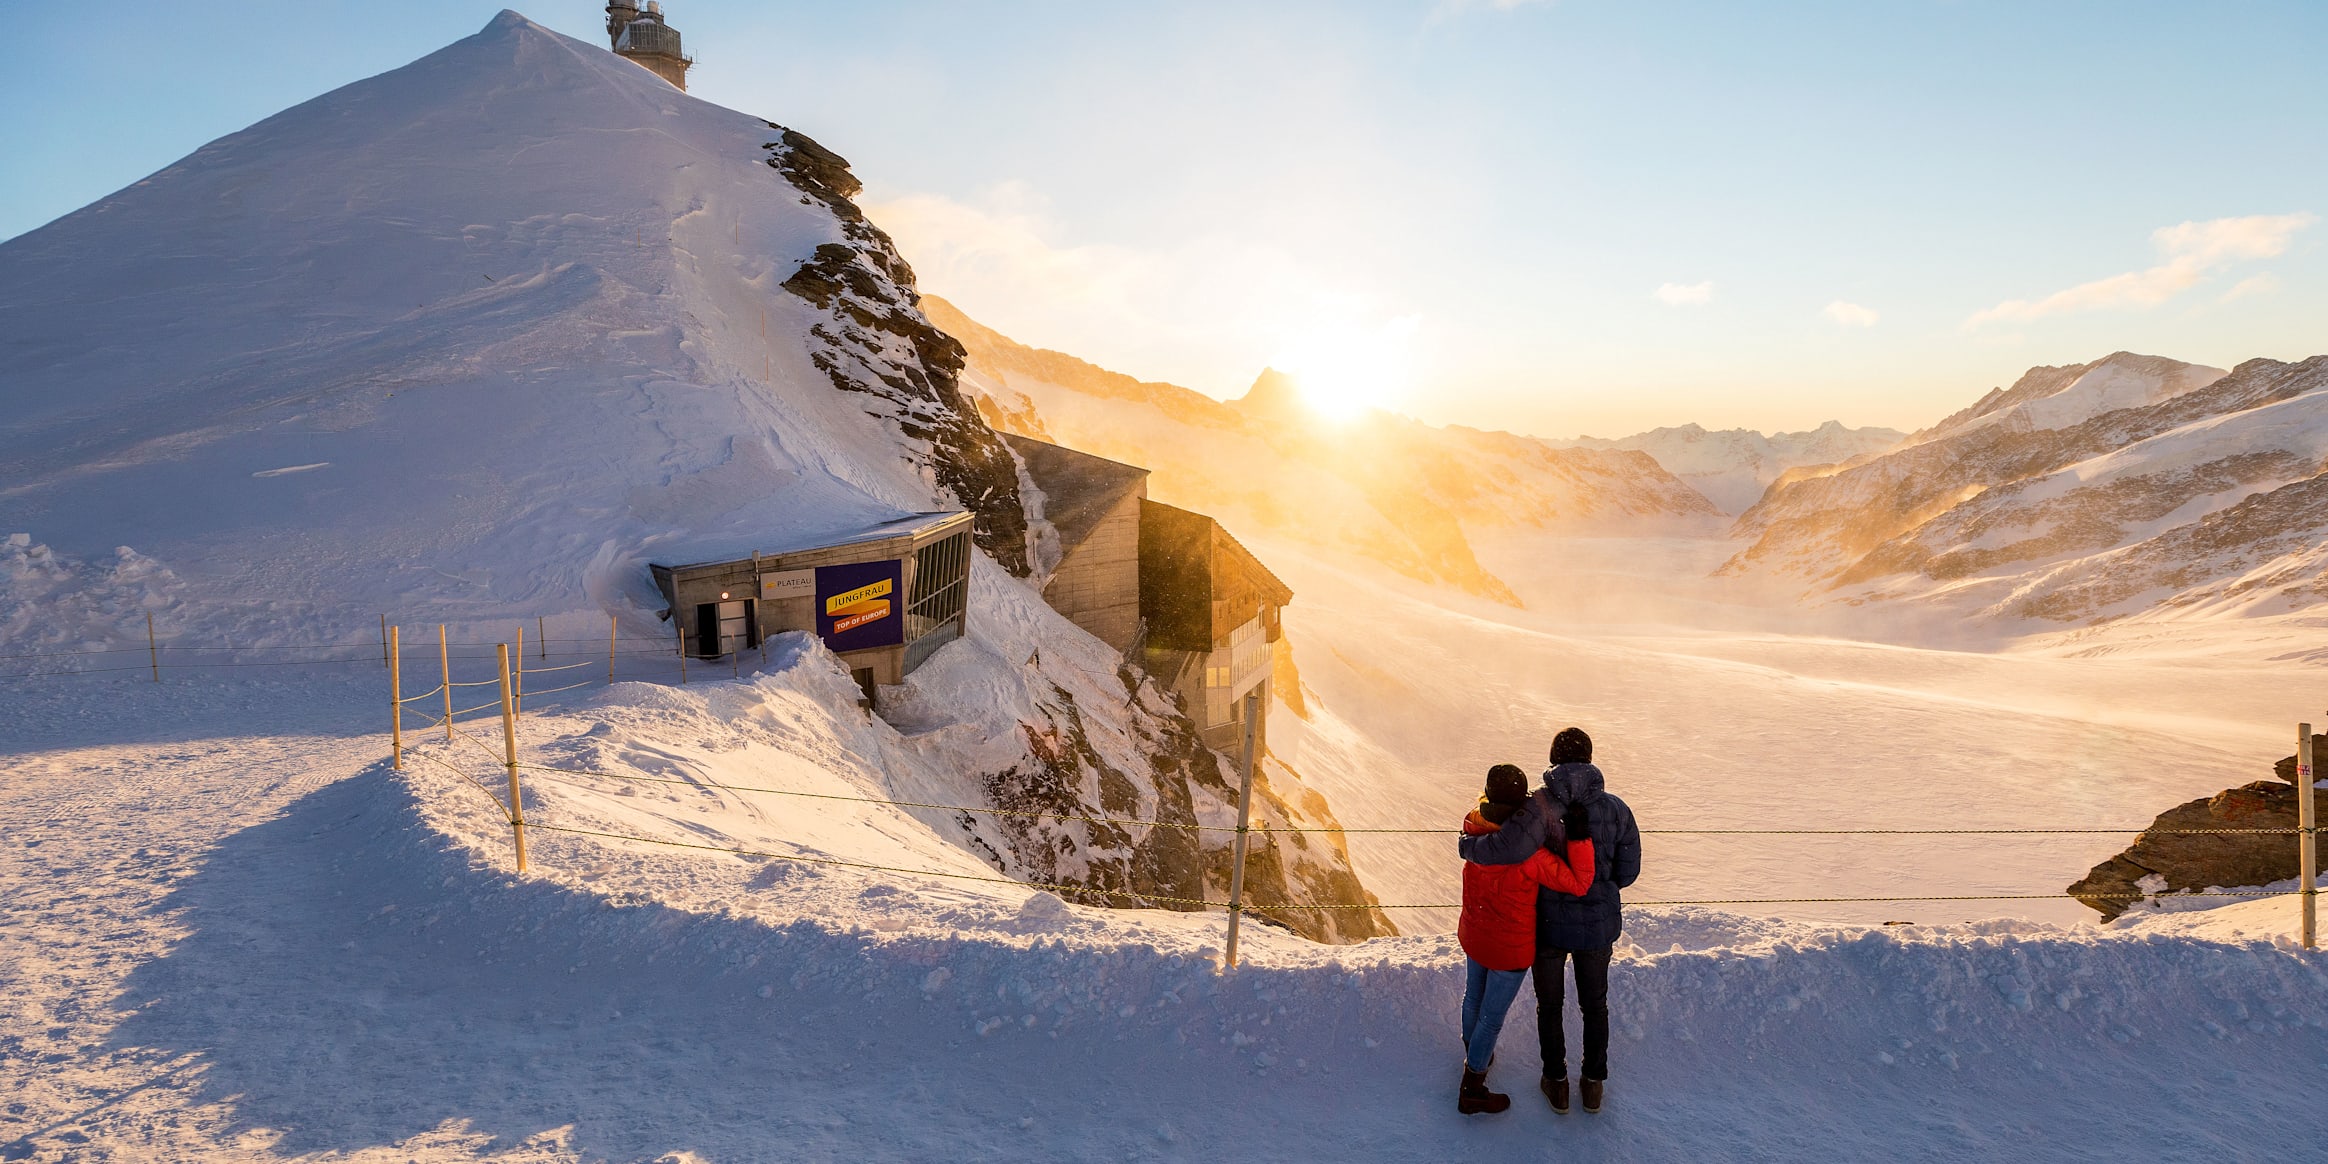 Ambiance du soir et du matin, activités et expérience, Jungfraujoch, Jungfraujoch-Top-of-Europe, Plateau, été, relations, hiver, jungfrau.ch